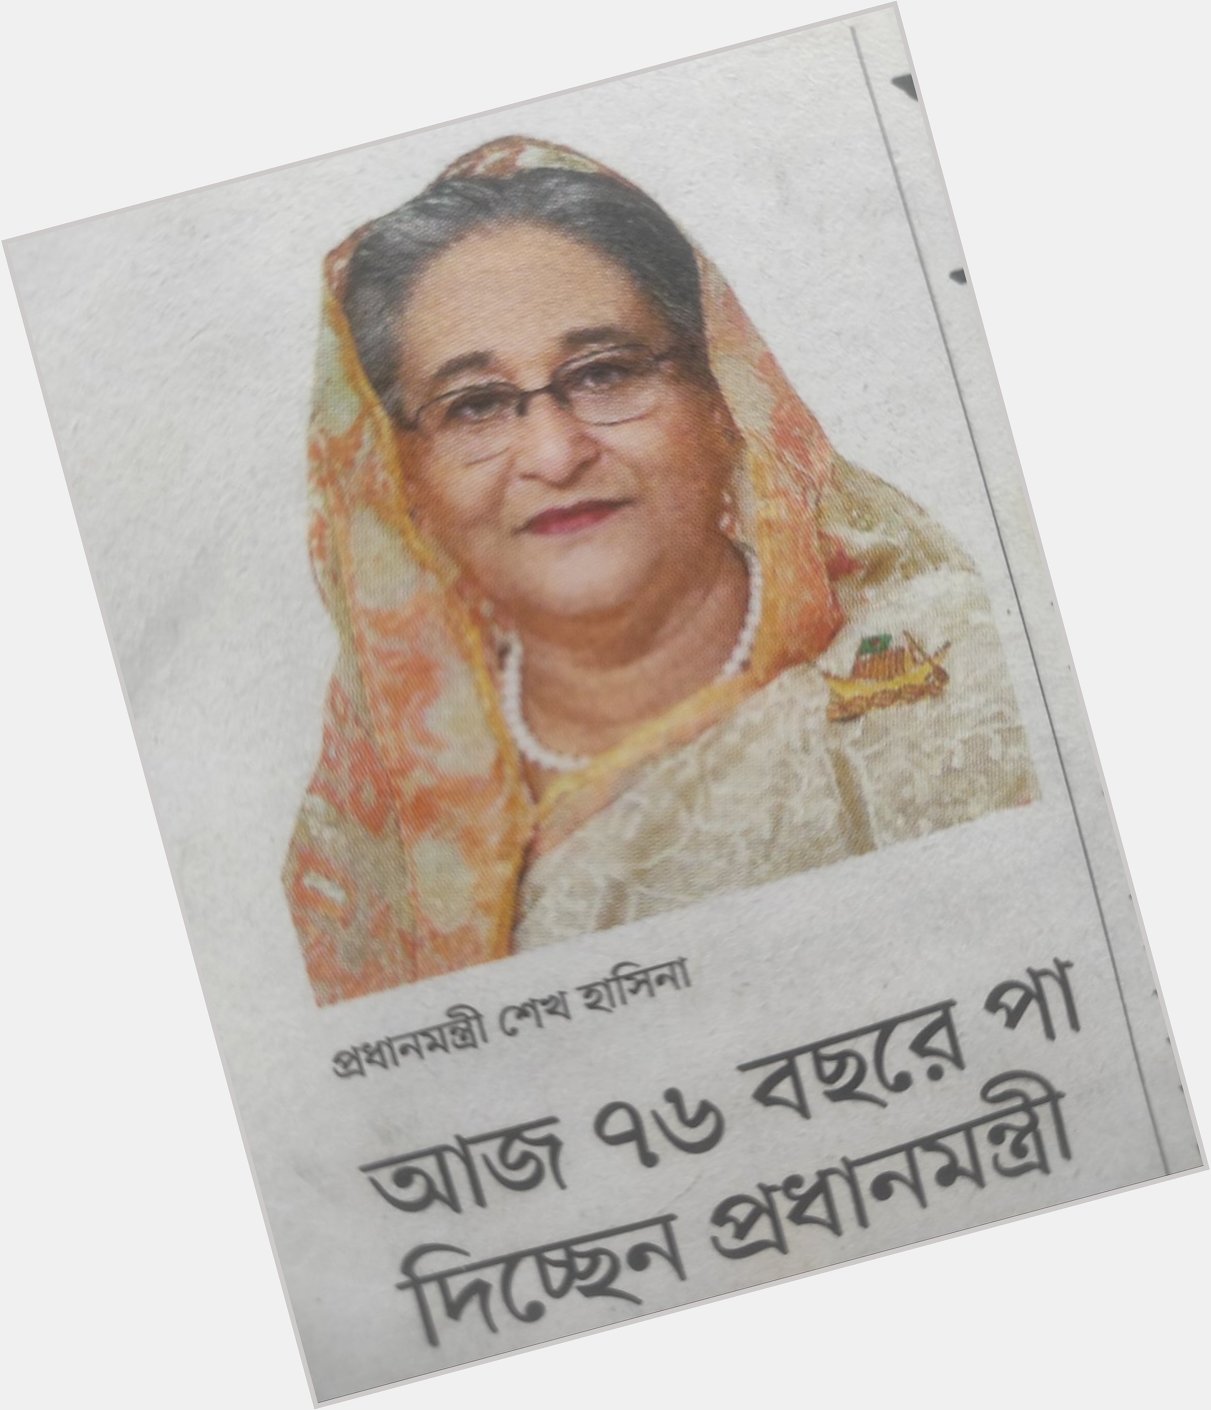 Happy Birthday to
PM Sheikh Hasina 